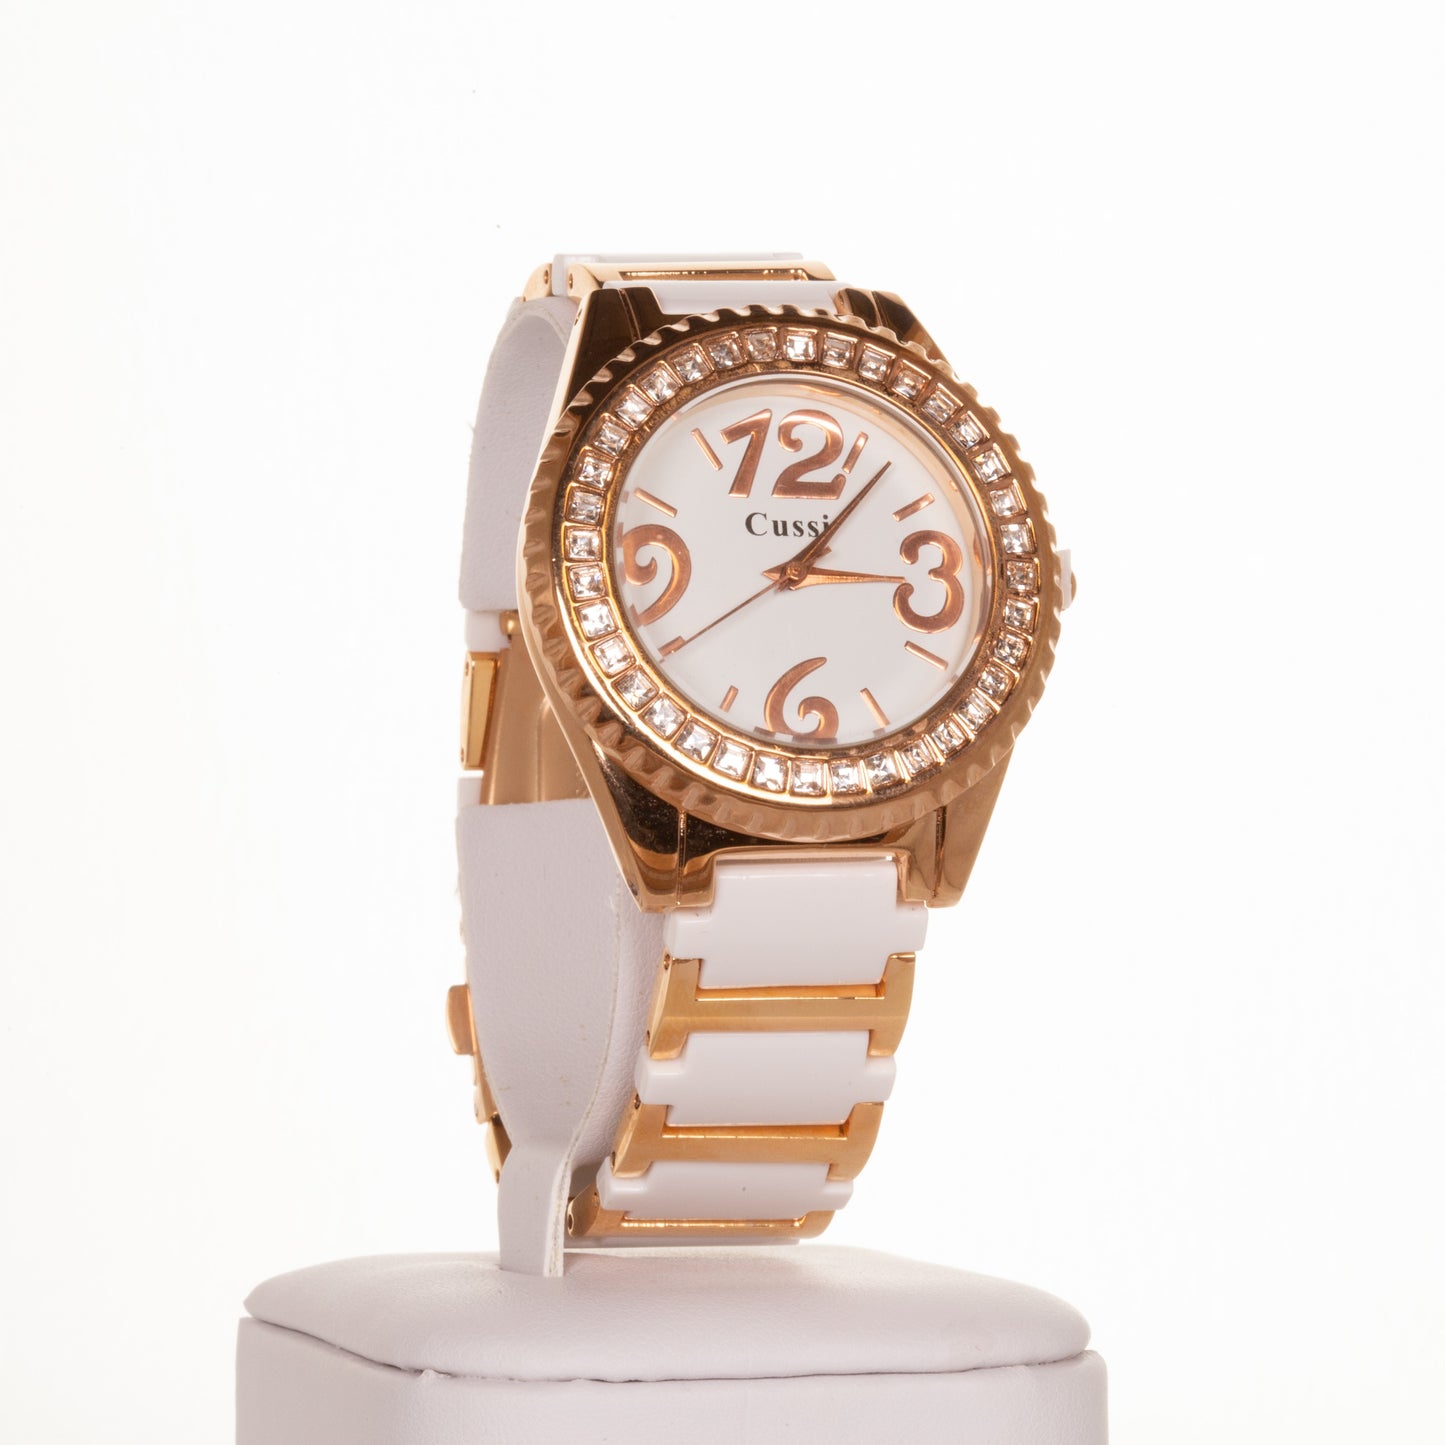 CUSSI dámské hodinky v barvě růžového zlata  s bílým řemínkem a krystaly křemene kolem ciferníku